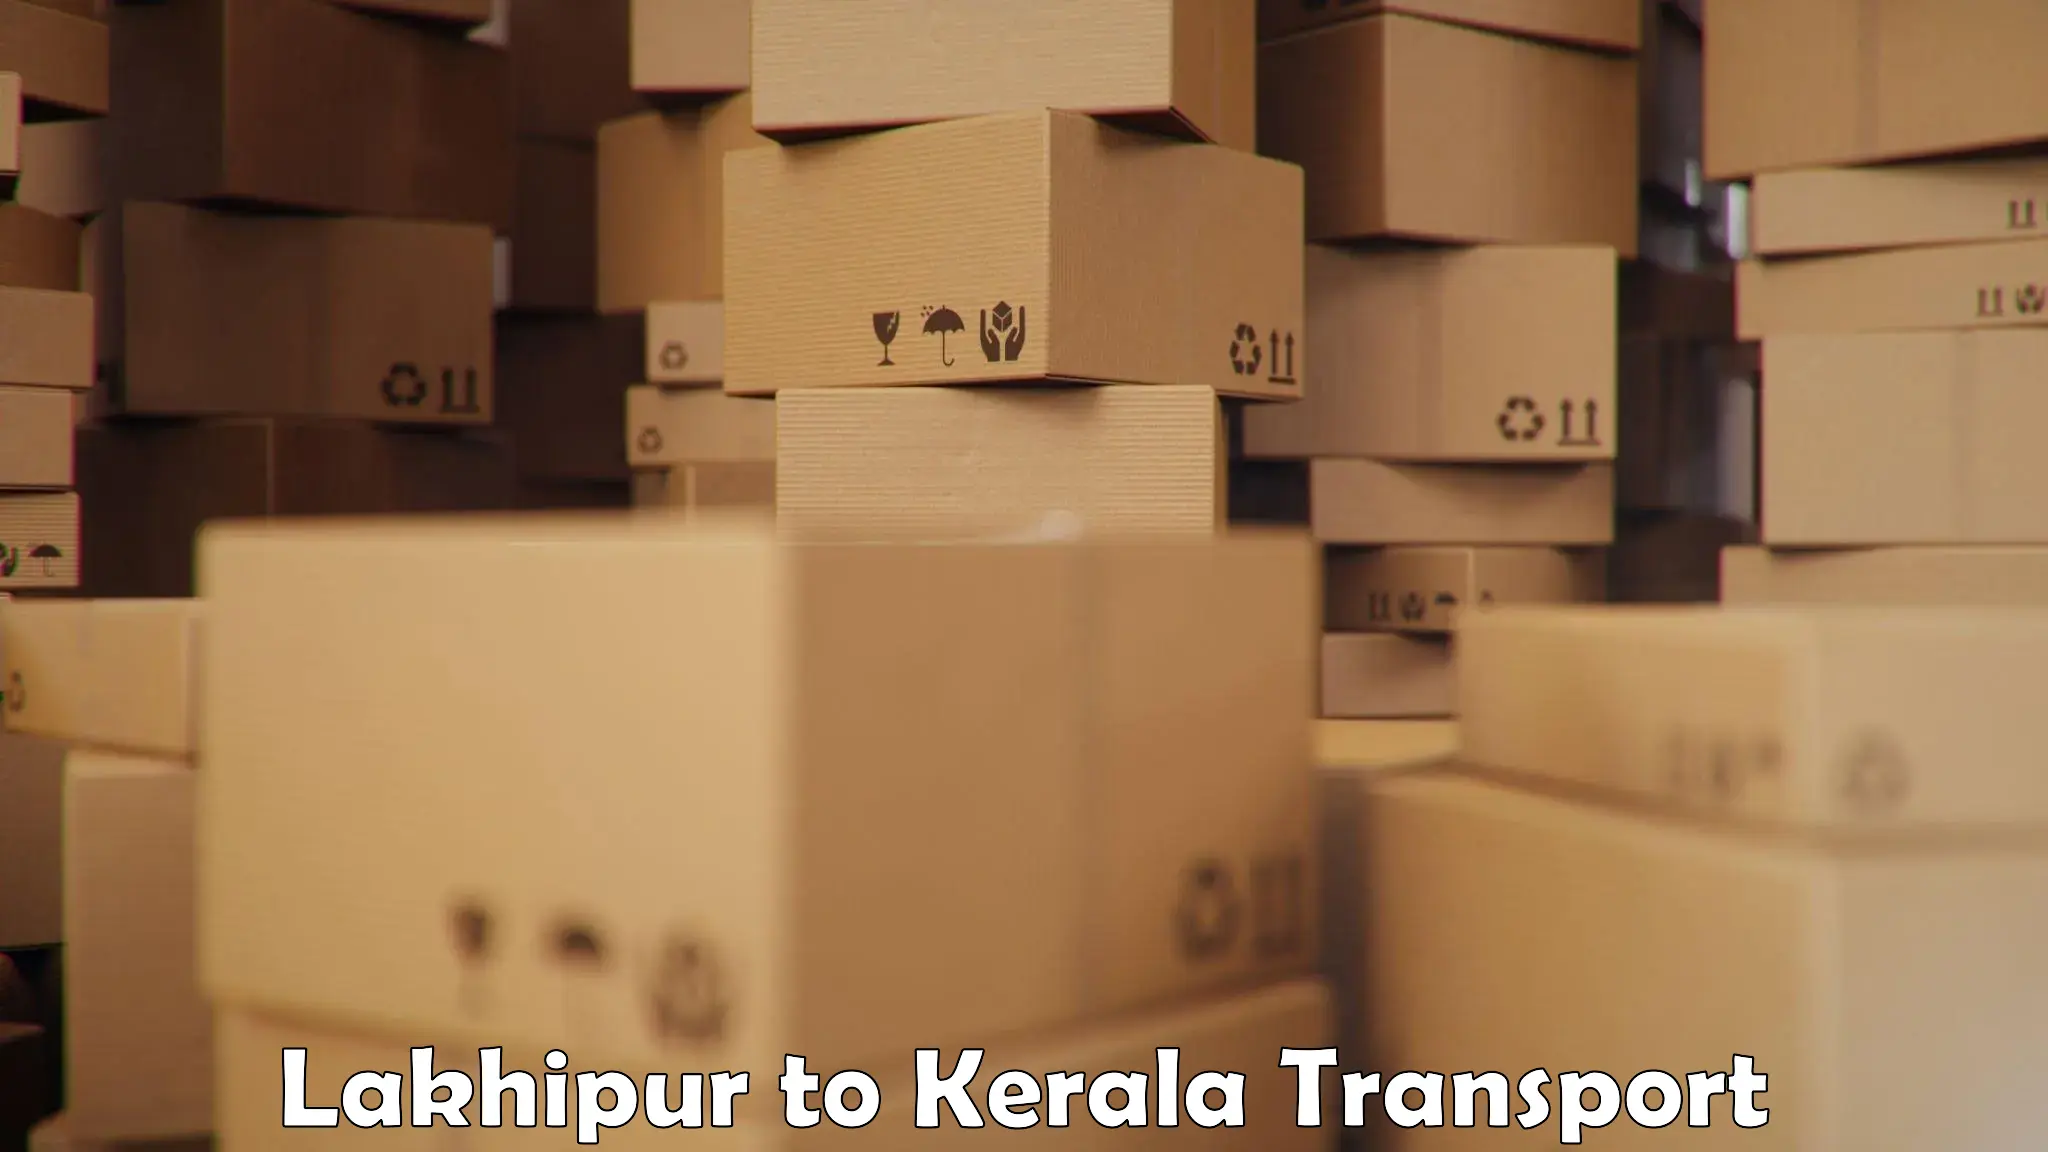 Shipping partner Lakhipur to Mundakayam